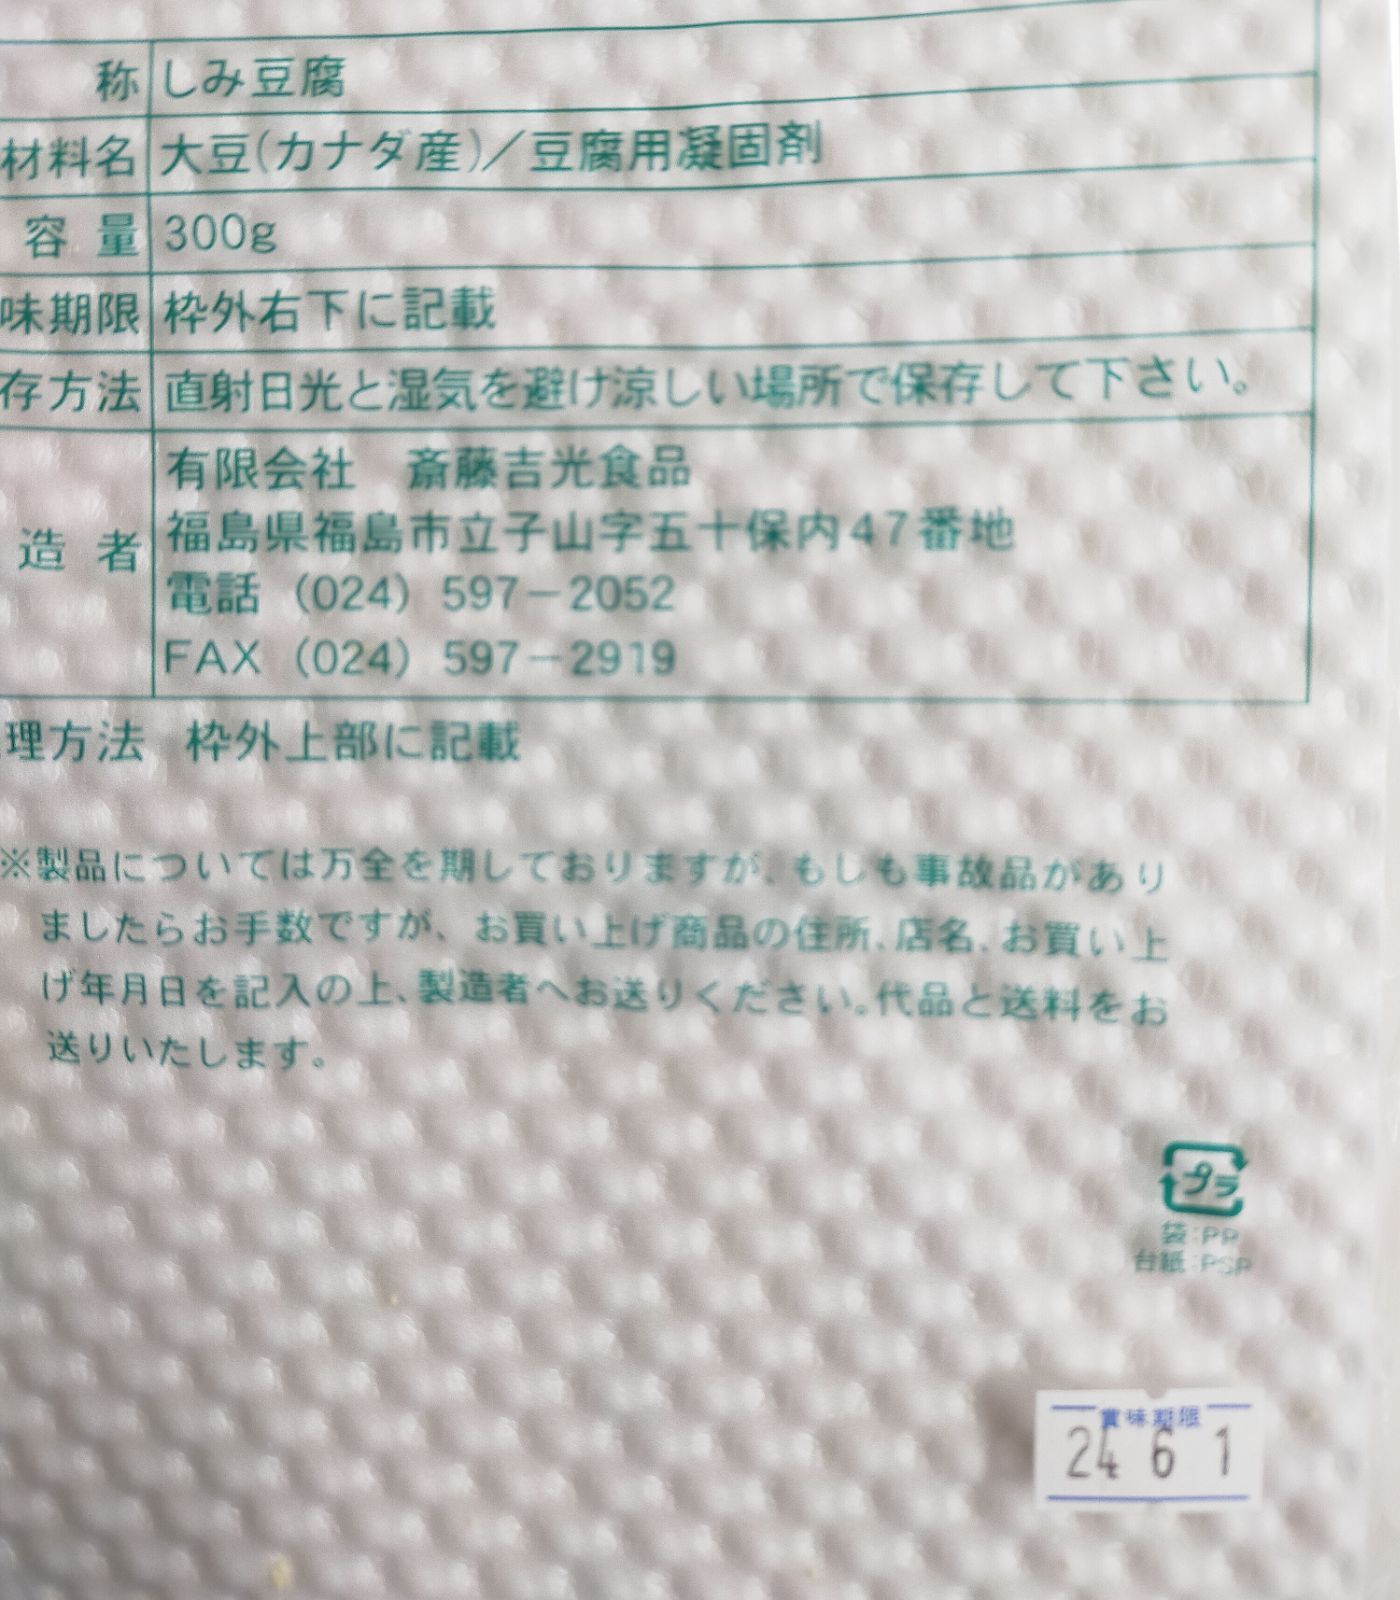 福島市名産 立子山の凍み豆腐 凍み豆腐3連(24枚×3束)箱入り - 卵、豆腐料理